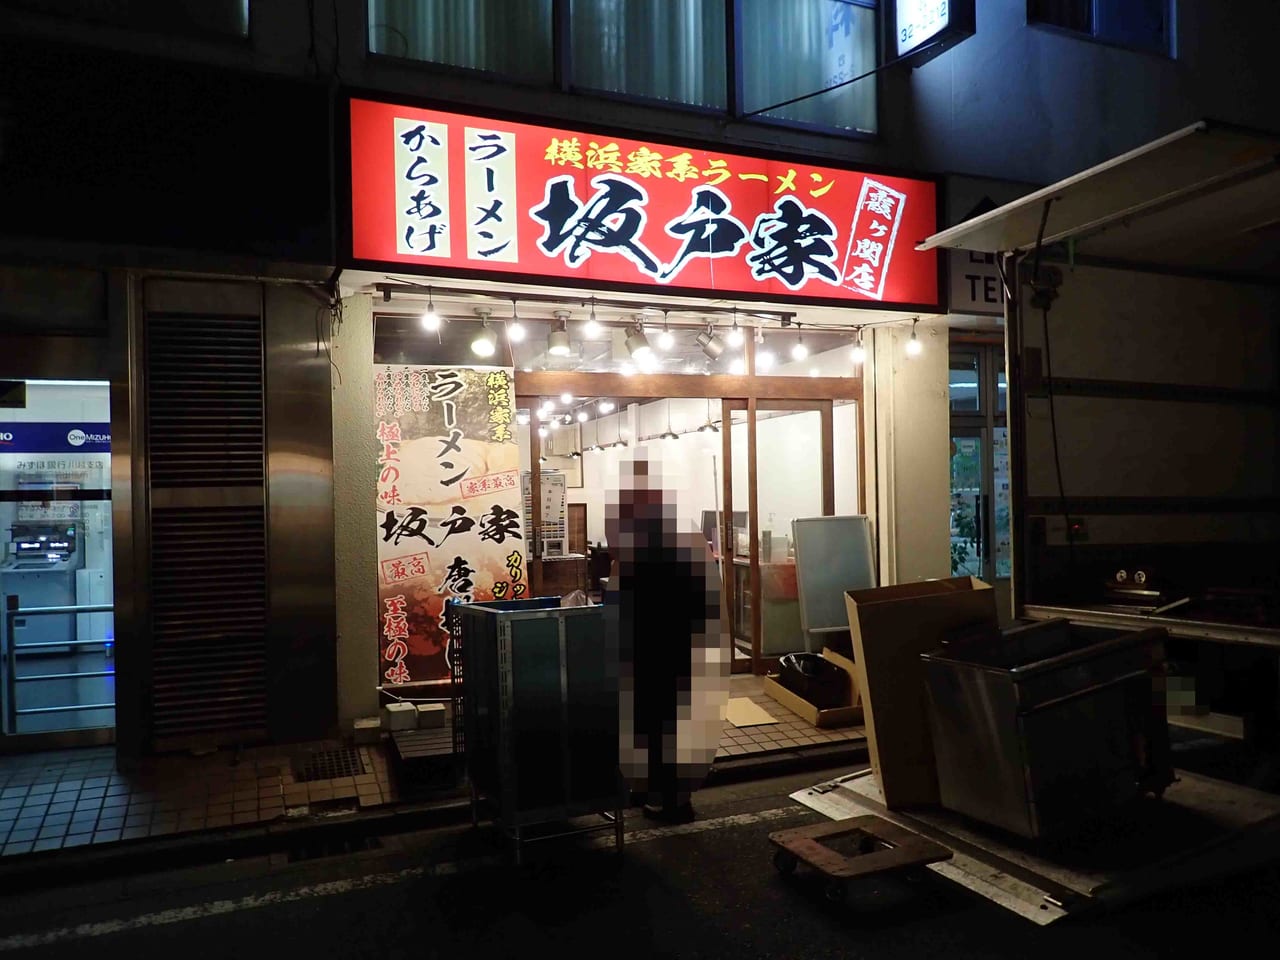 2023年1月に開店予定の『横浜家系ラーメン 坂戸家』の霞ヶ関店